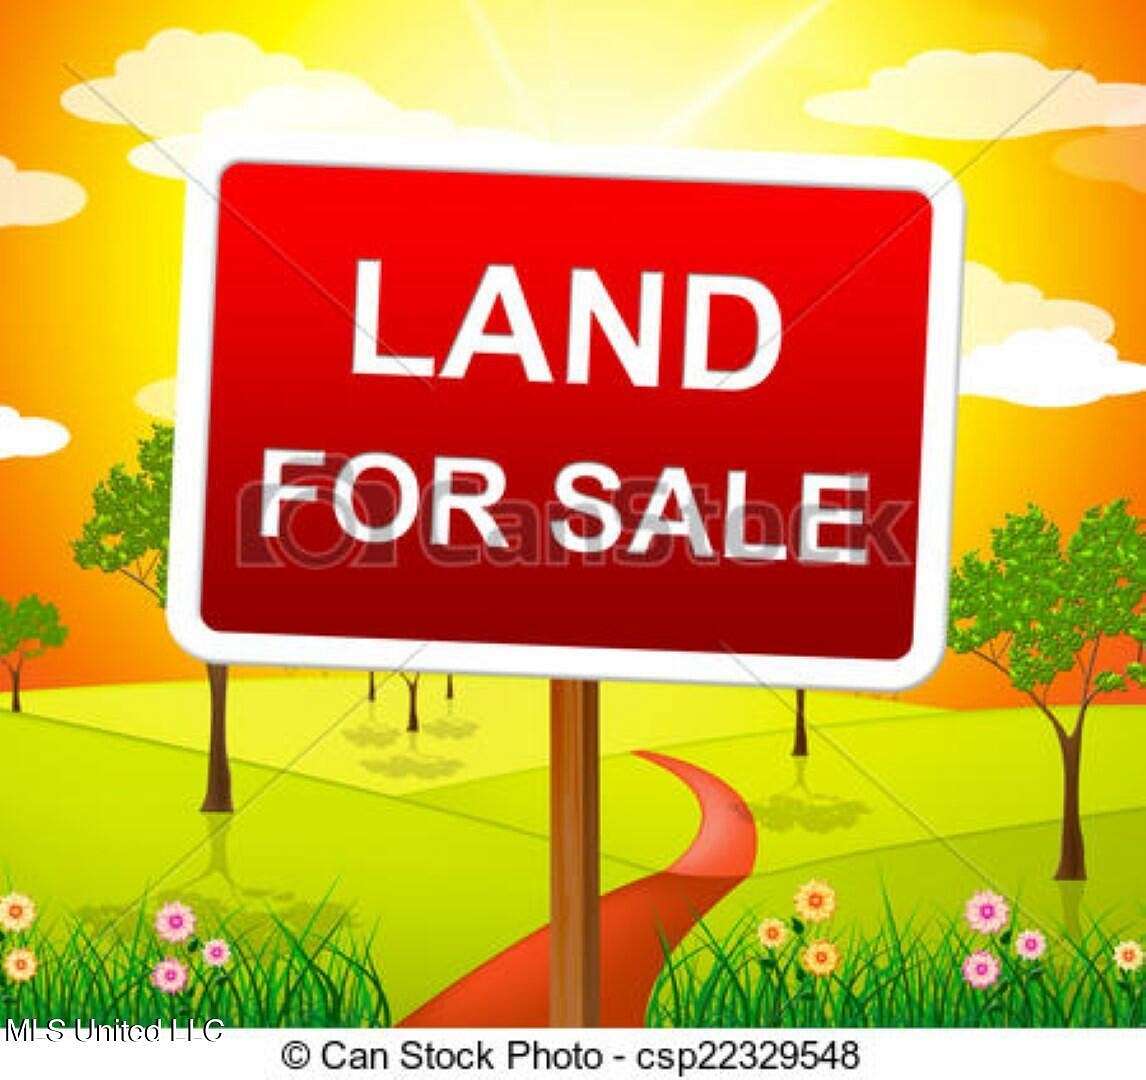 26.66 Acres of Agricultural Land for Sale in Hernando, Mississippi